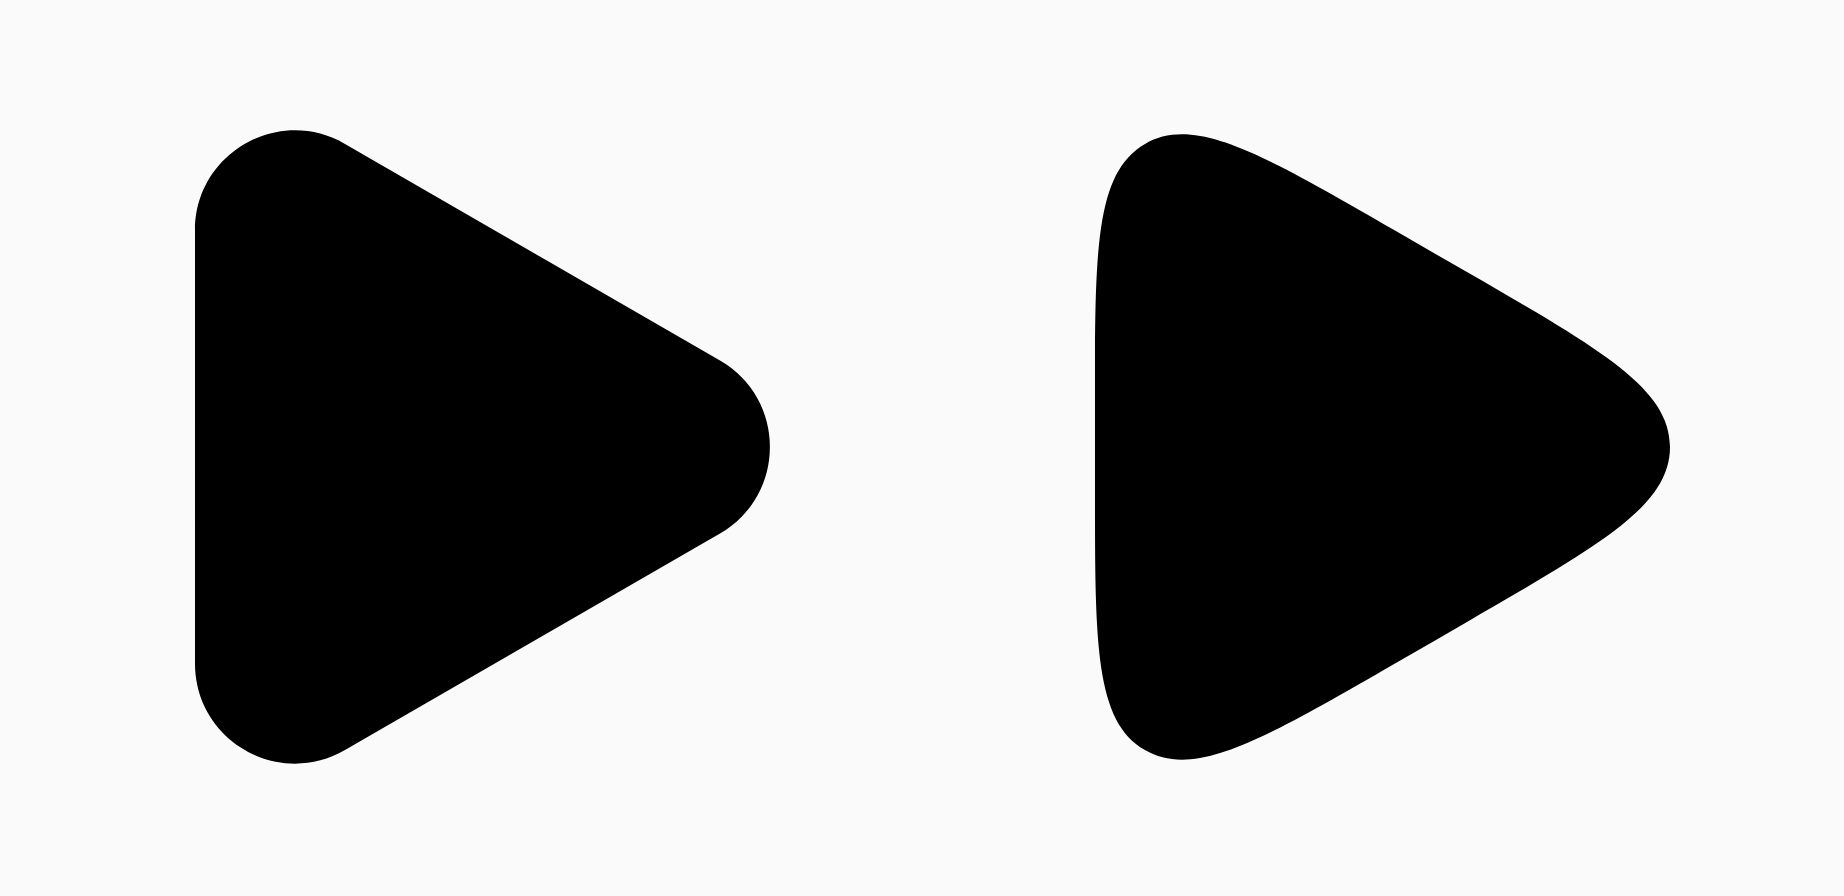 Zwei schwarze Dreiecke, die den Unterschied in den Glättungsparametern darstellen.